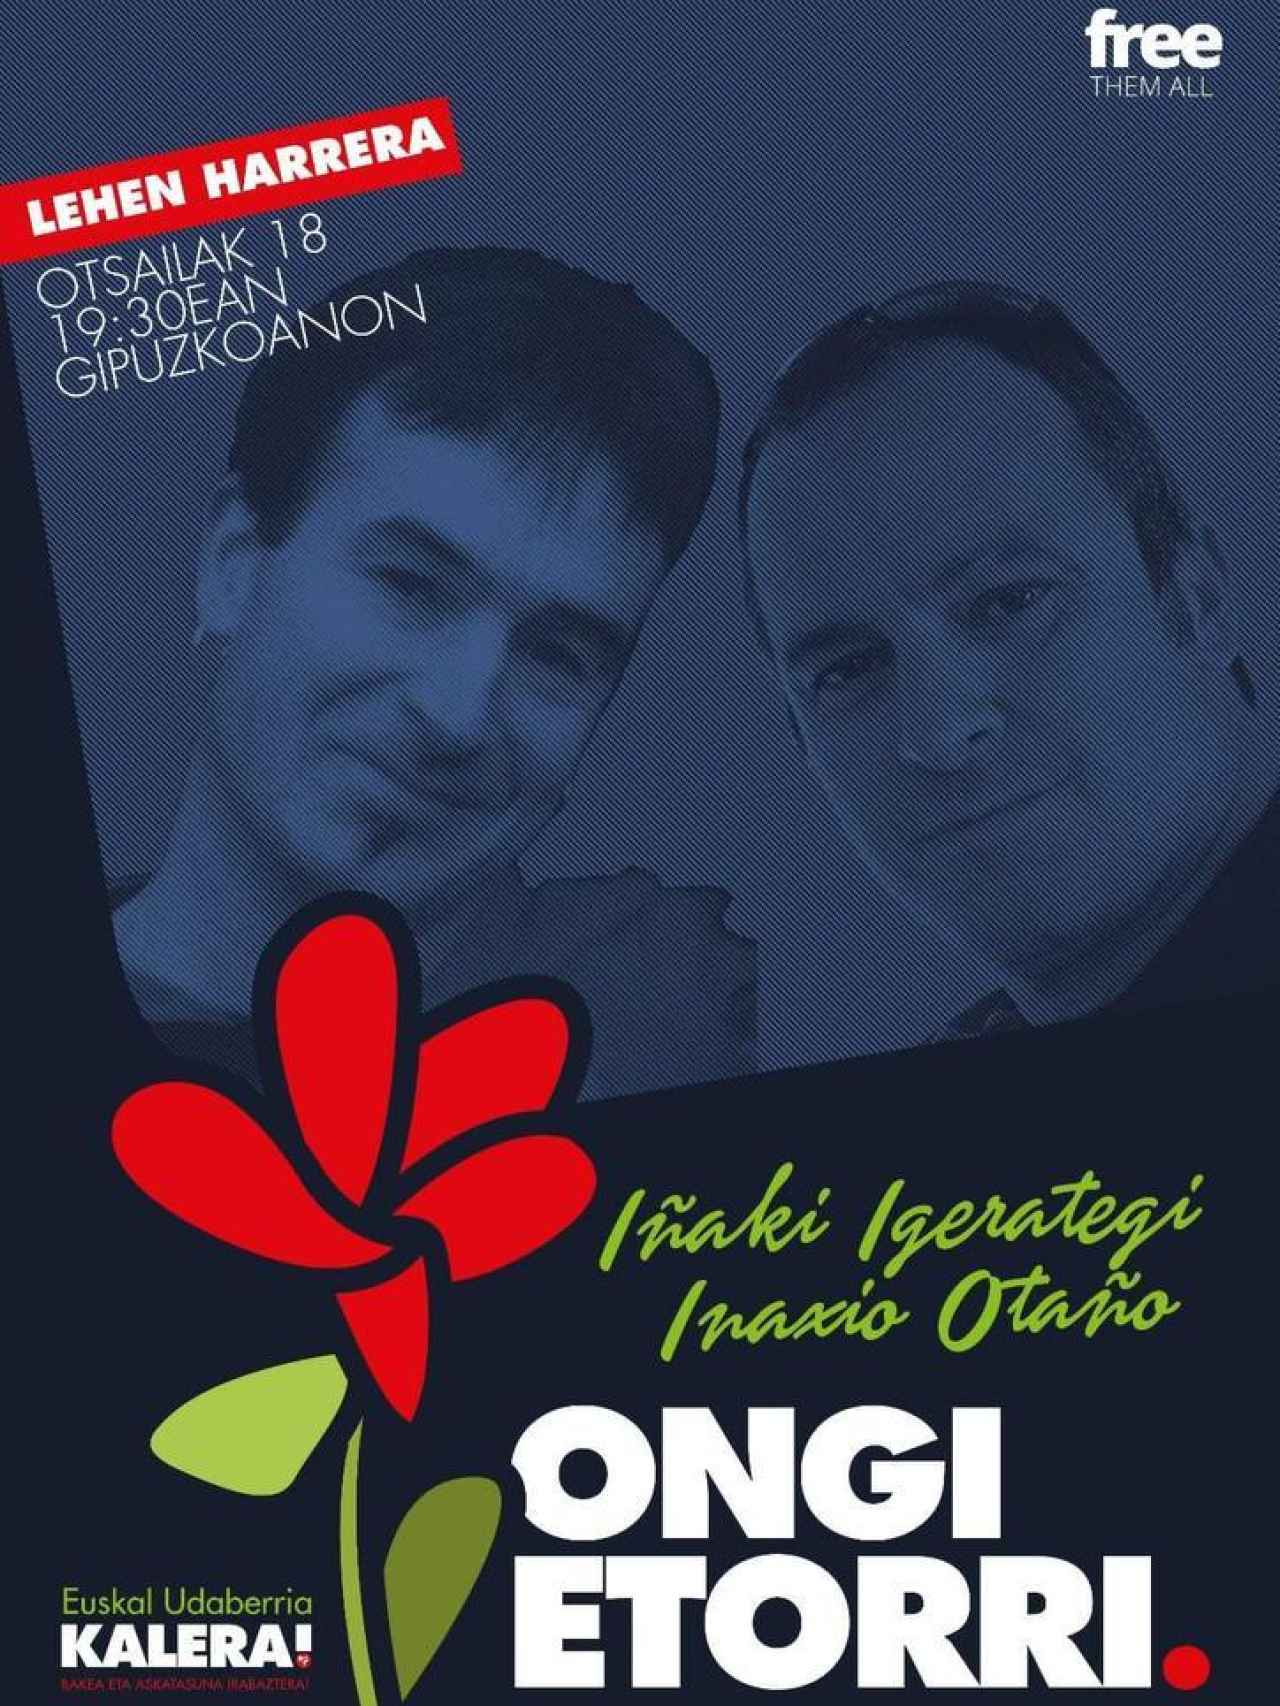 Cartel promocional del acto de bienvenida a Igerategi y Otaño.